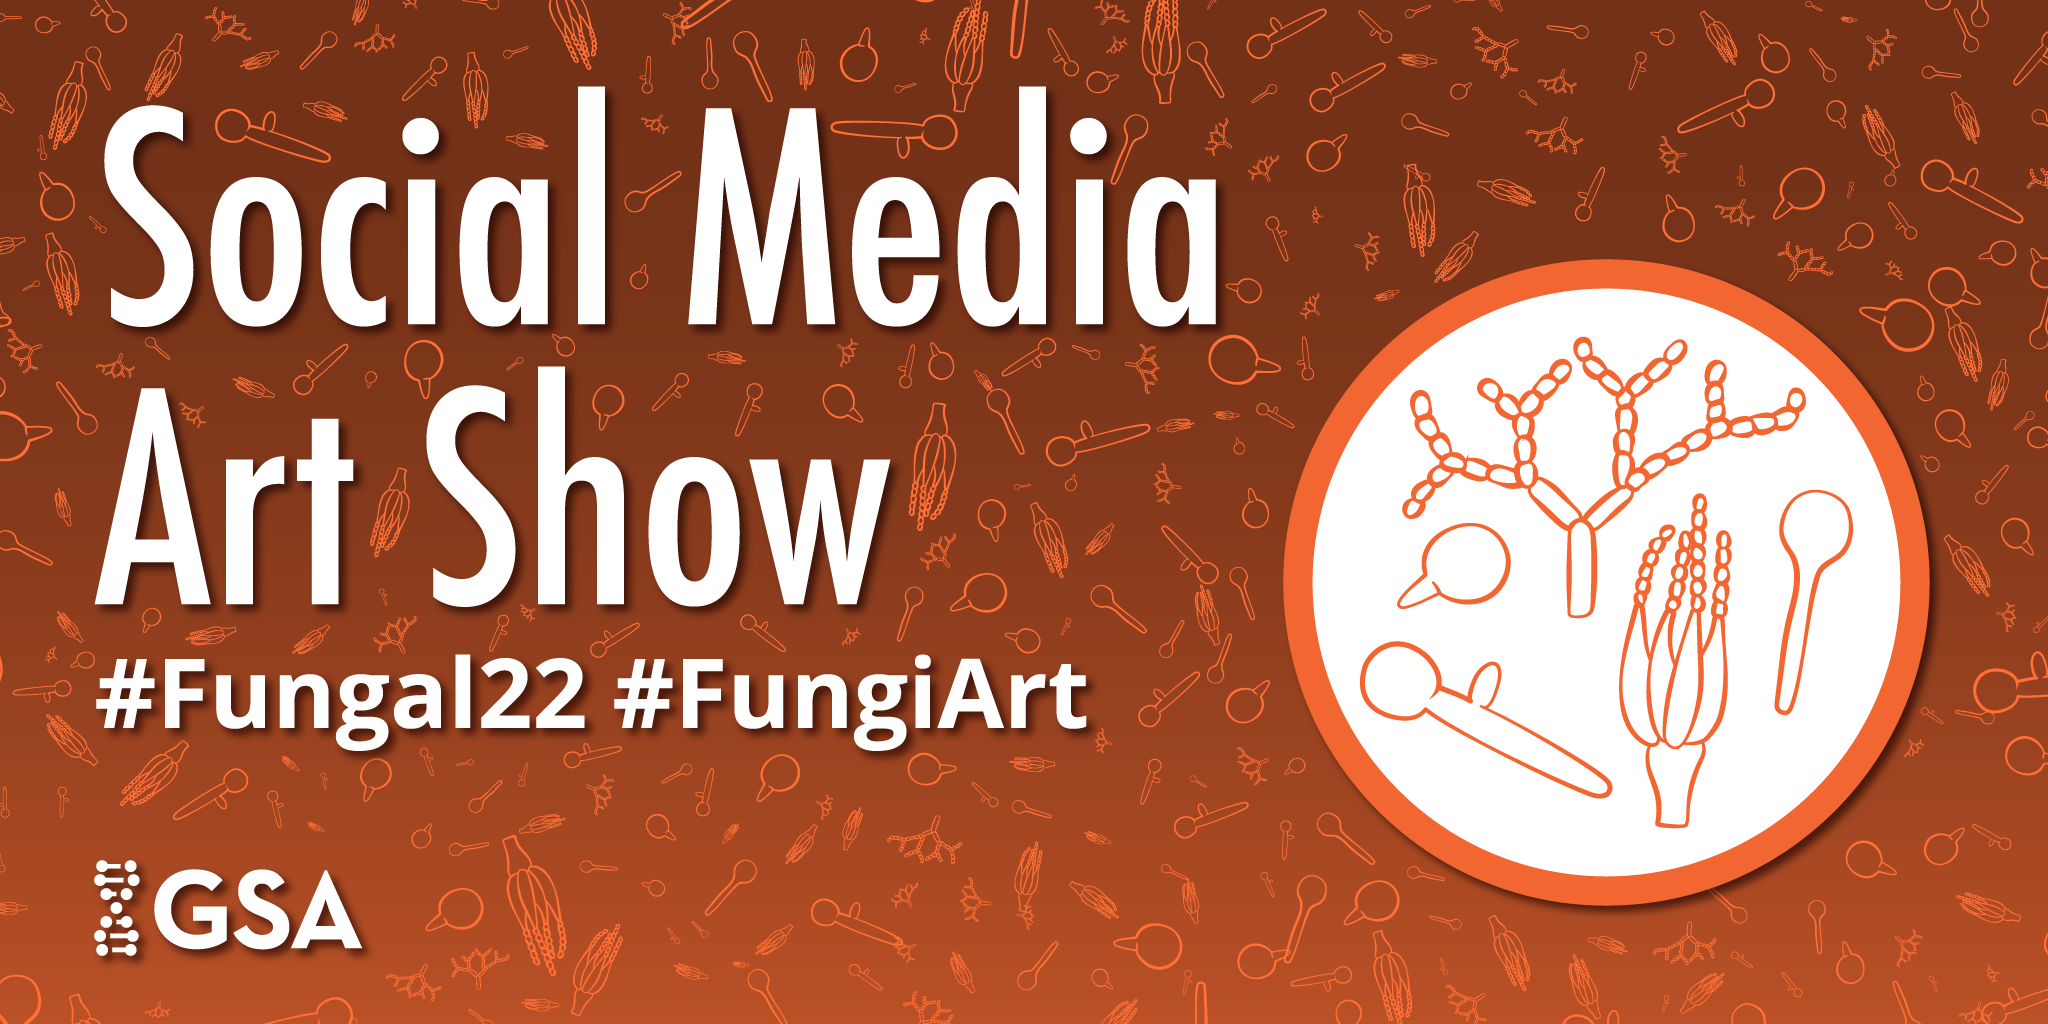 Fungal22 Art Show